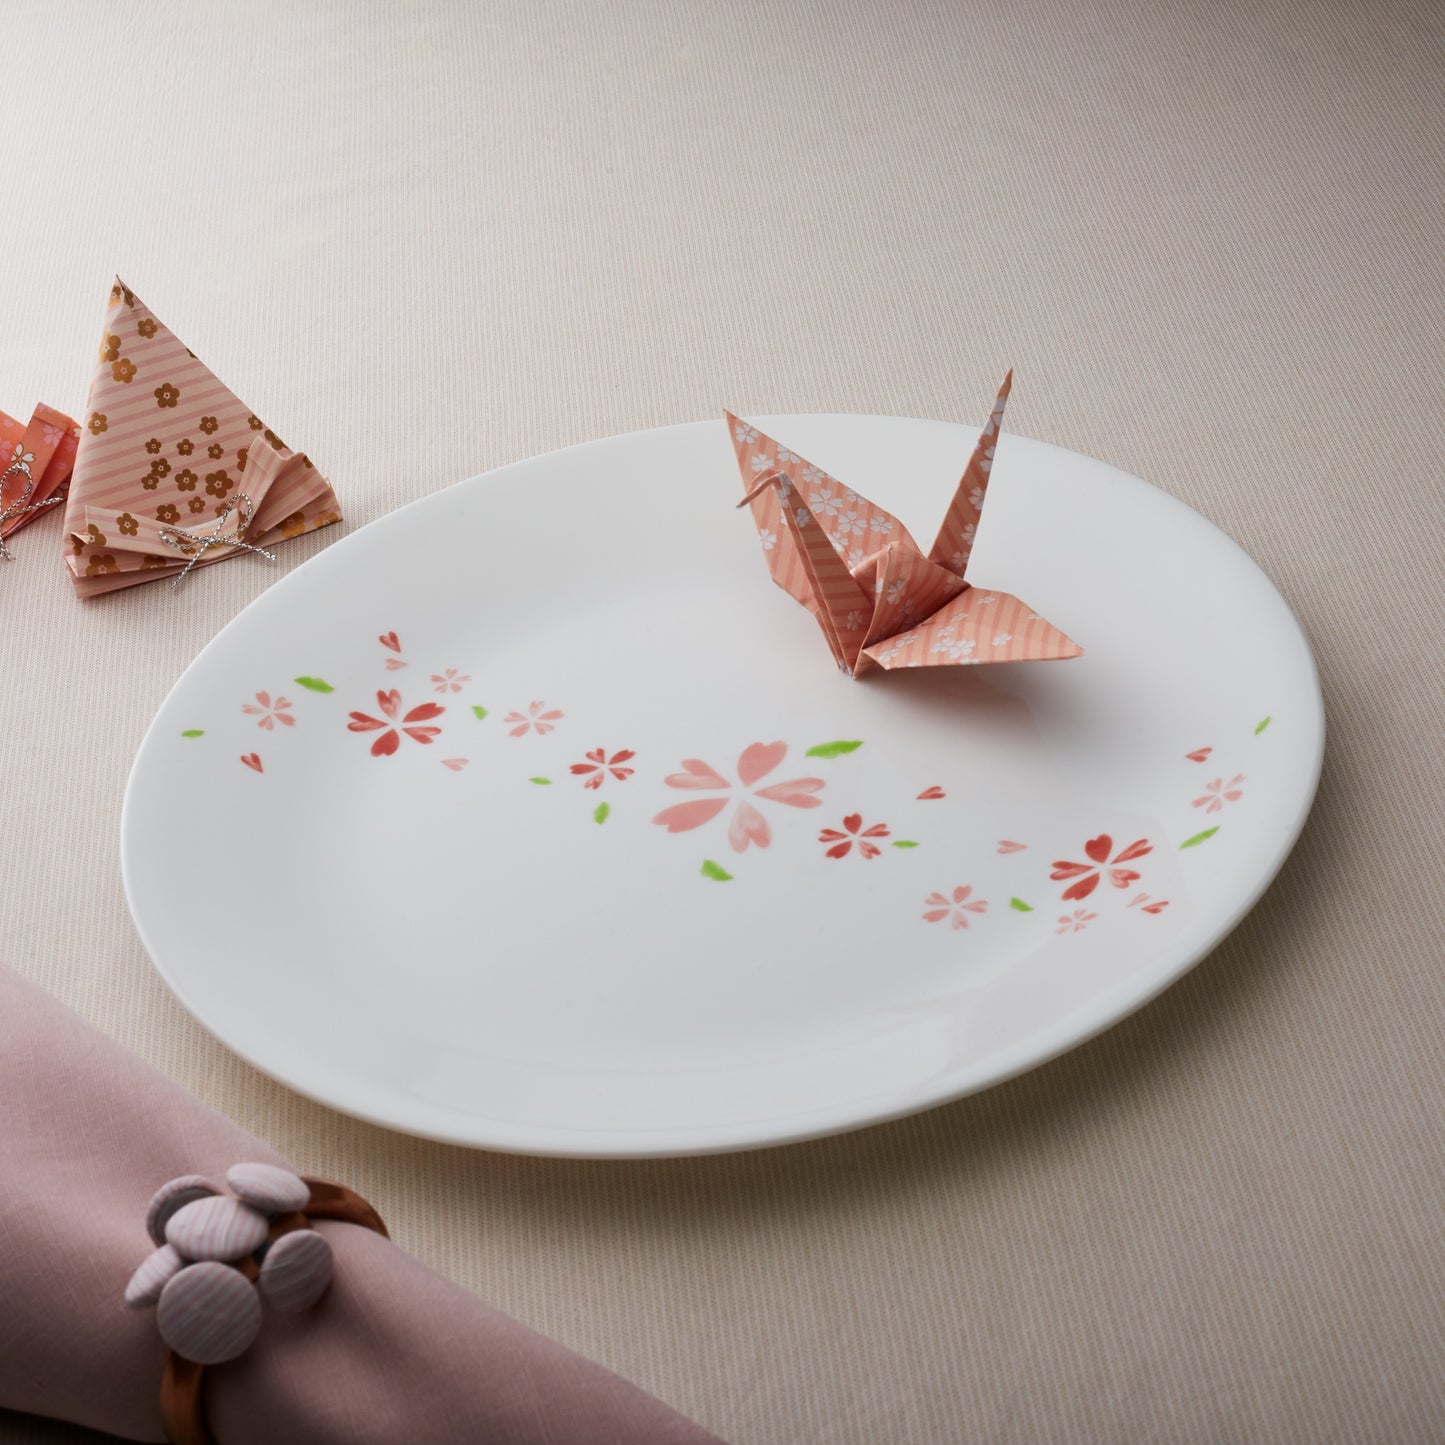 Corelle Soup Plate 17cm - Hanami Blossom